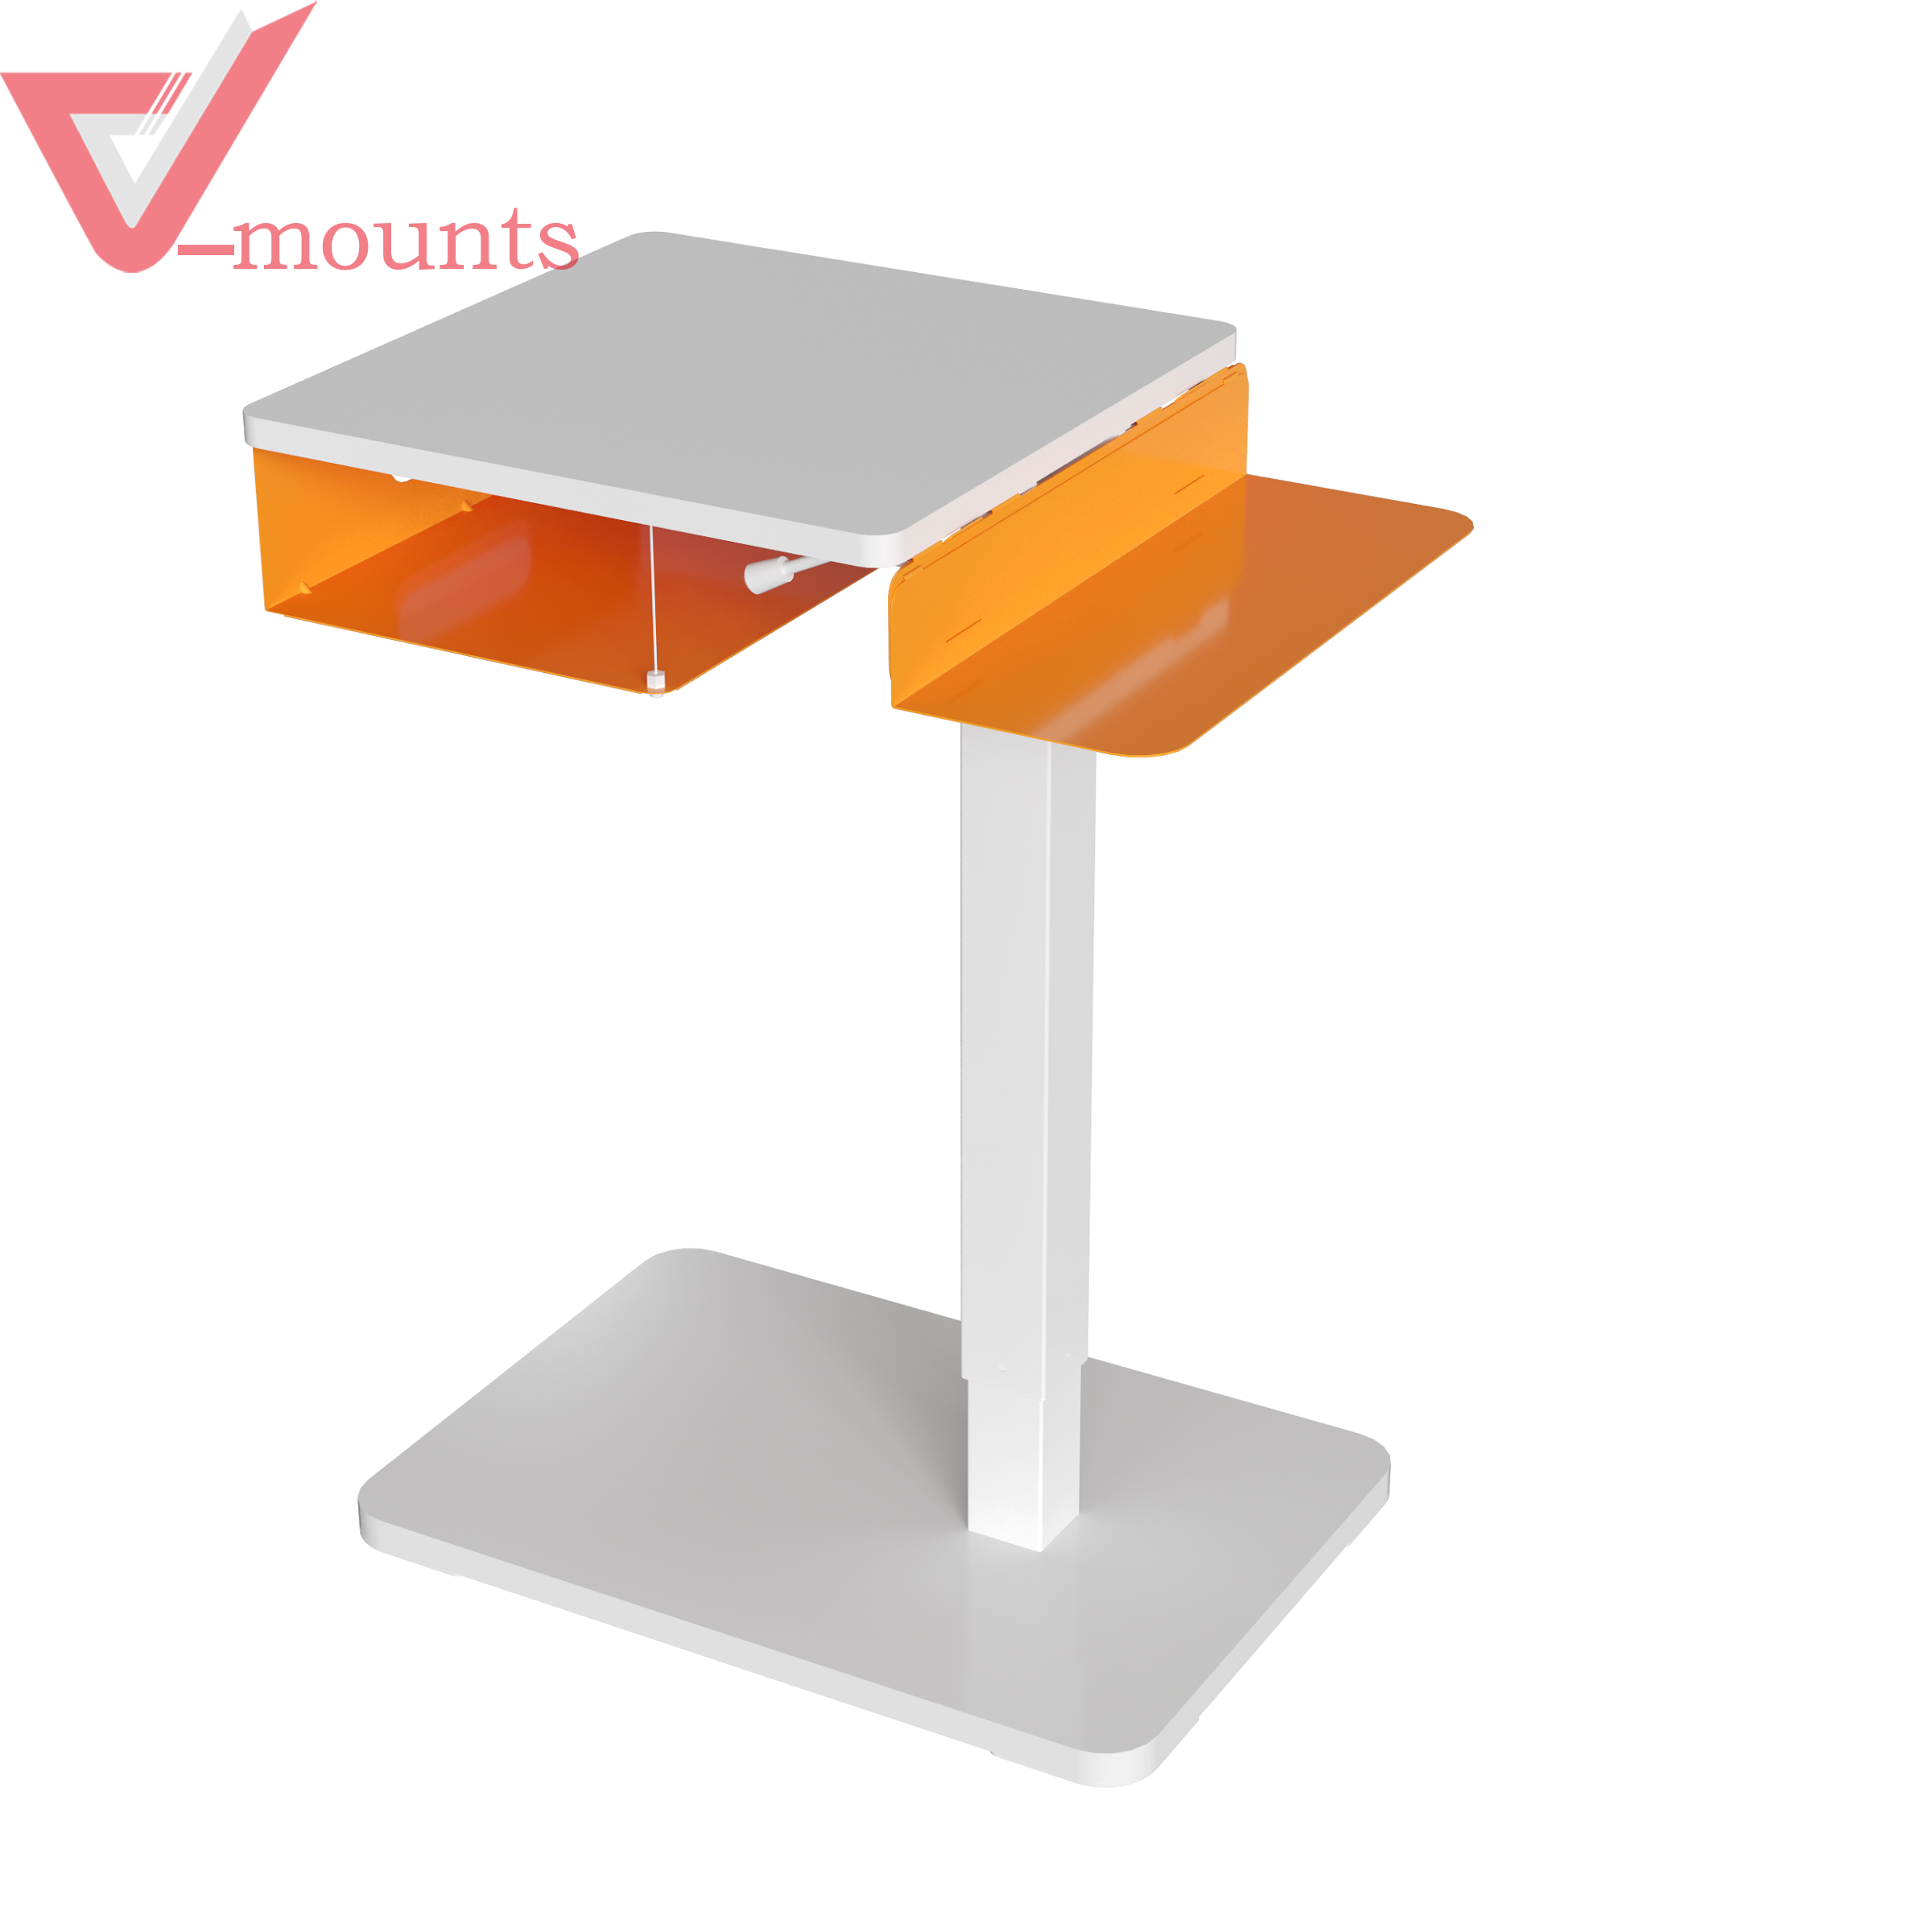 V-mounts ErgoFusion Hidden Caster Movable Height Adjustable Desk With Detachable Storage Drawer VM-FDS001